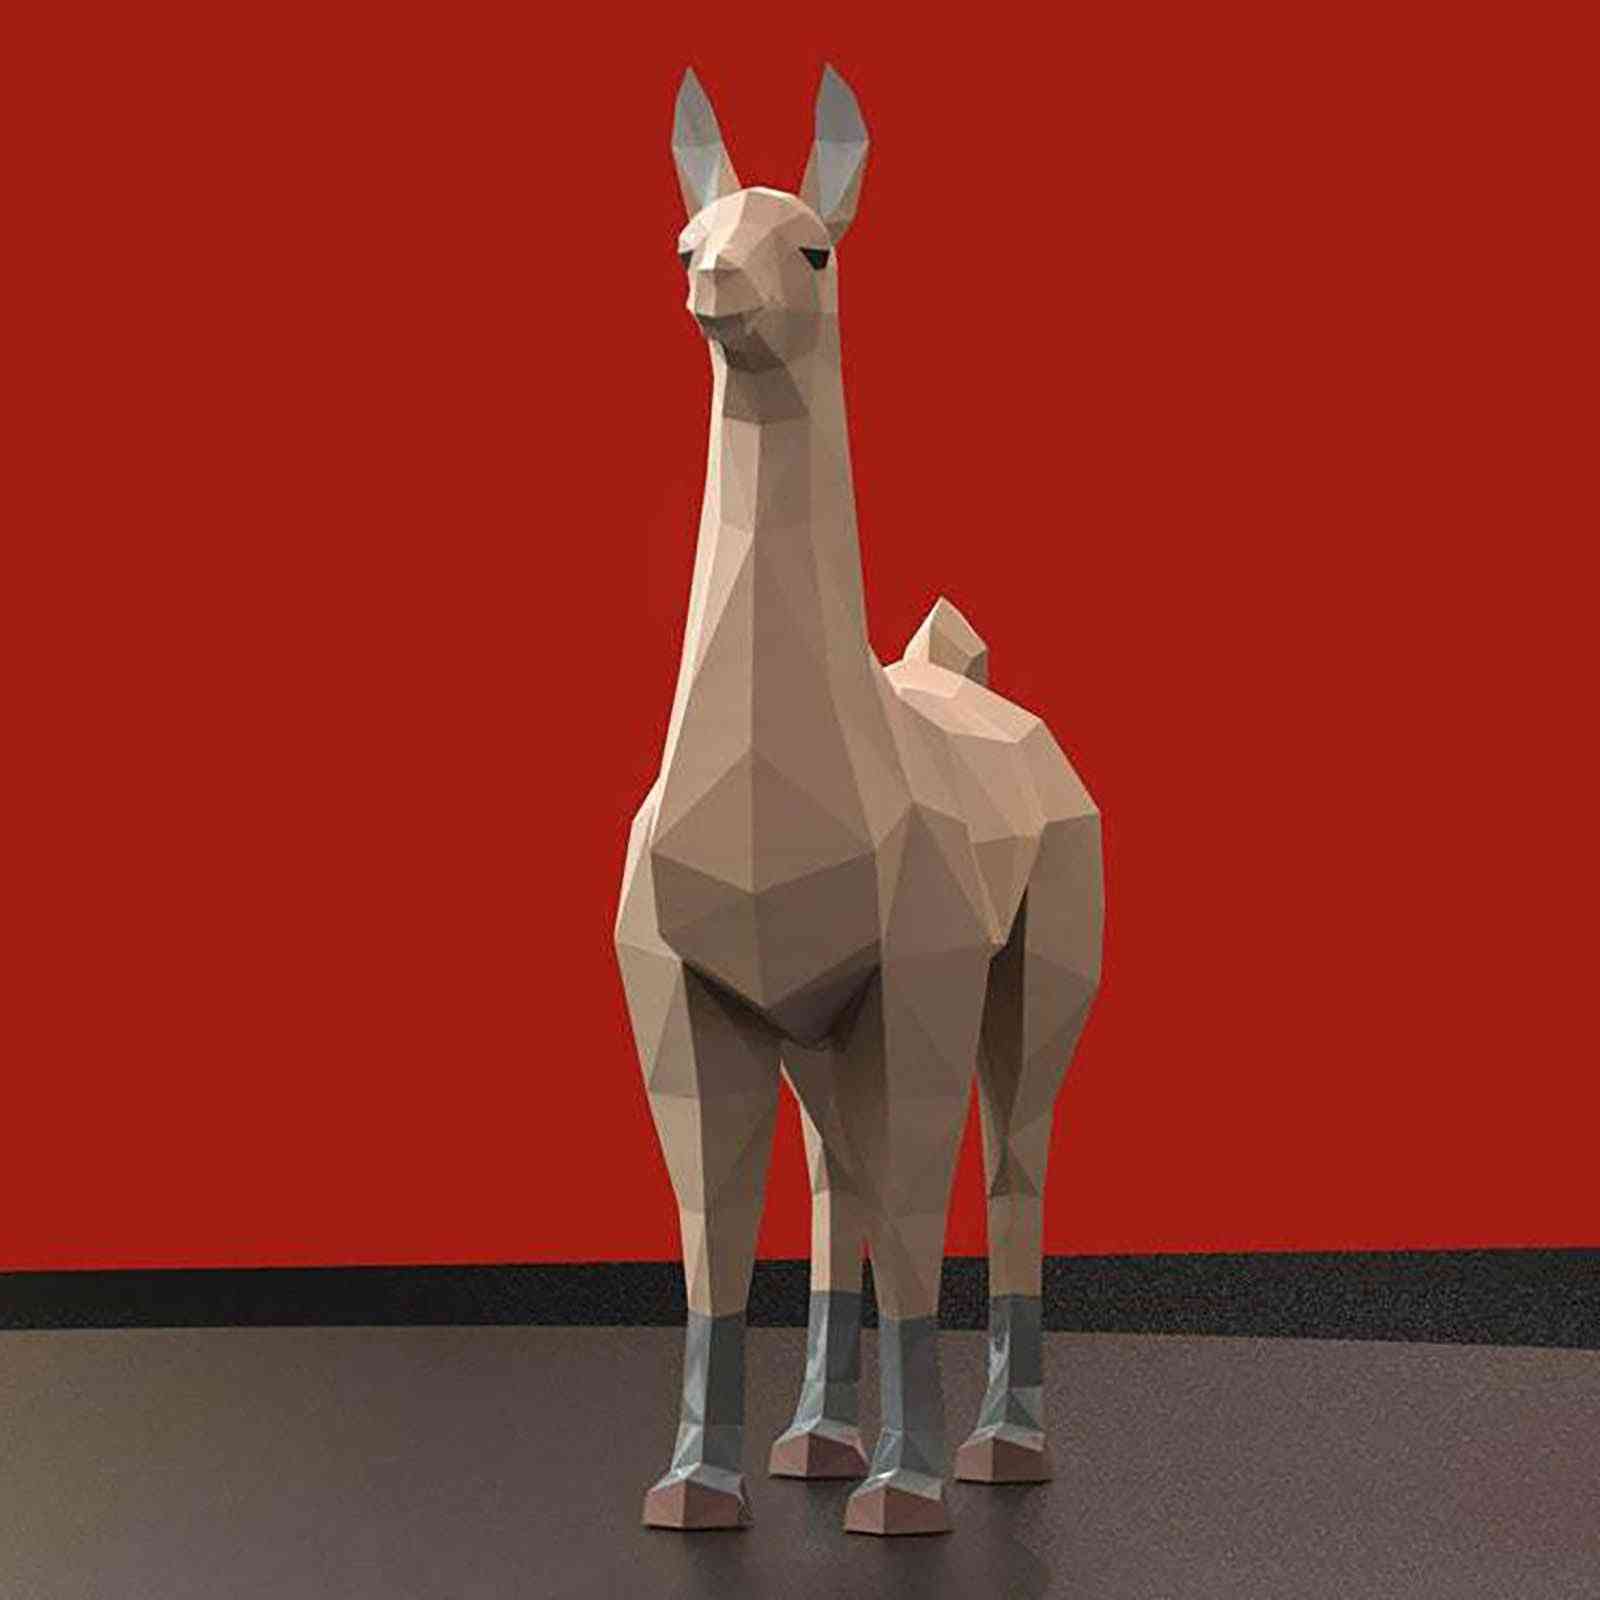 3D model- kreativní zvířata z papírnictví, domácí dekorace na zeď, hádanky